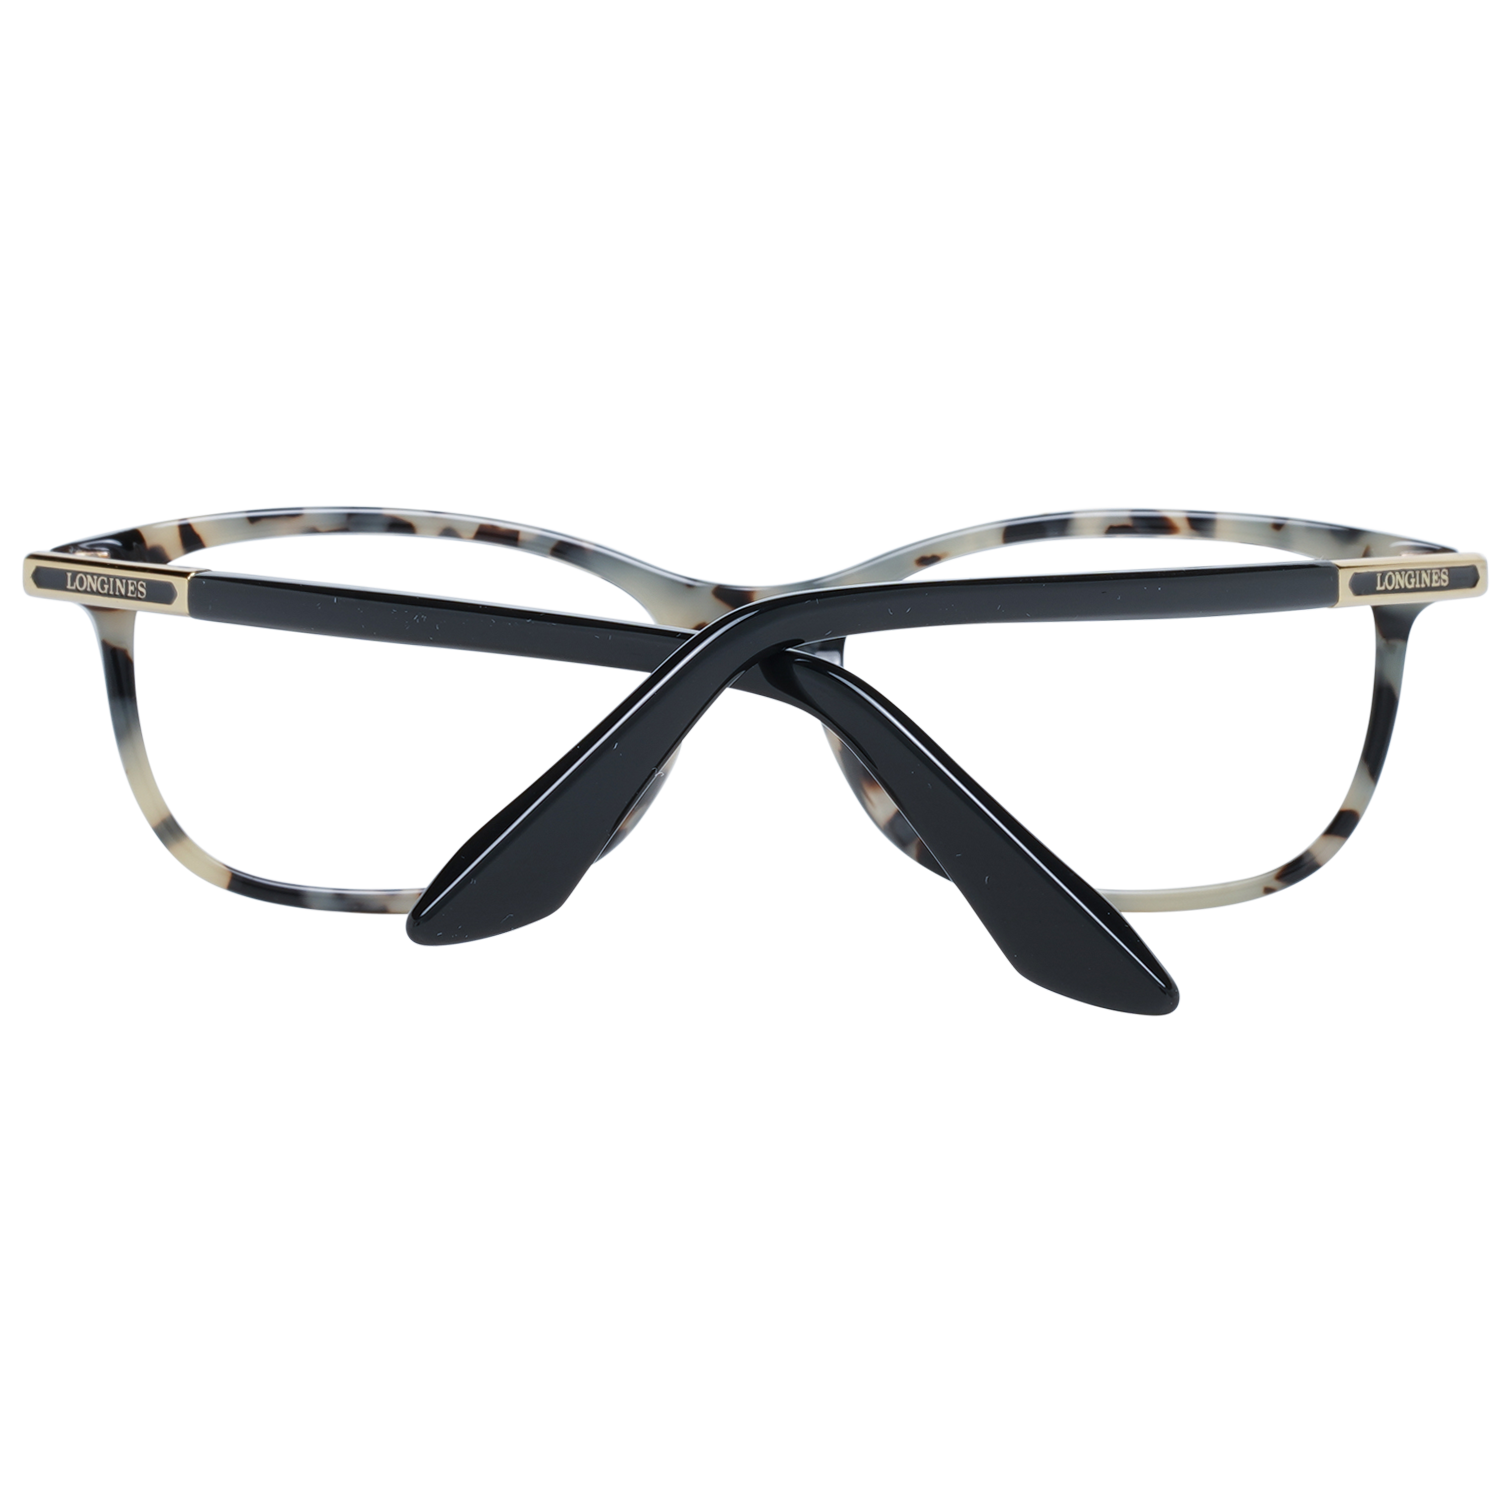 Longines Frames Longines Optical Frame LG5012-H 056 54 Eyeglasses Eyewear UK USA Australia 